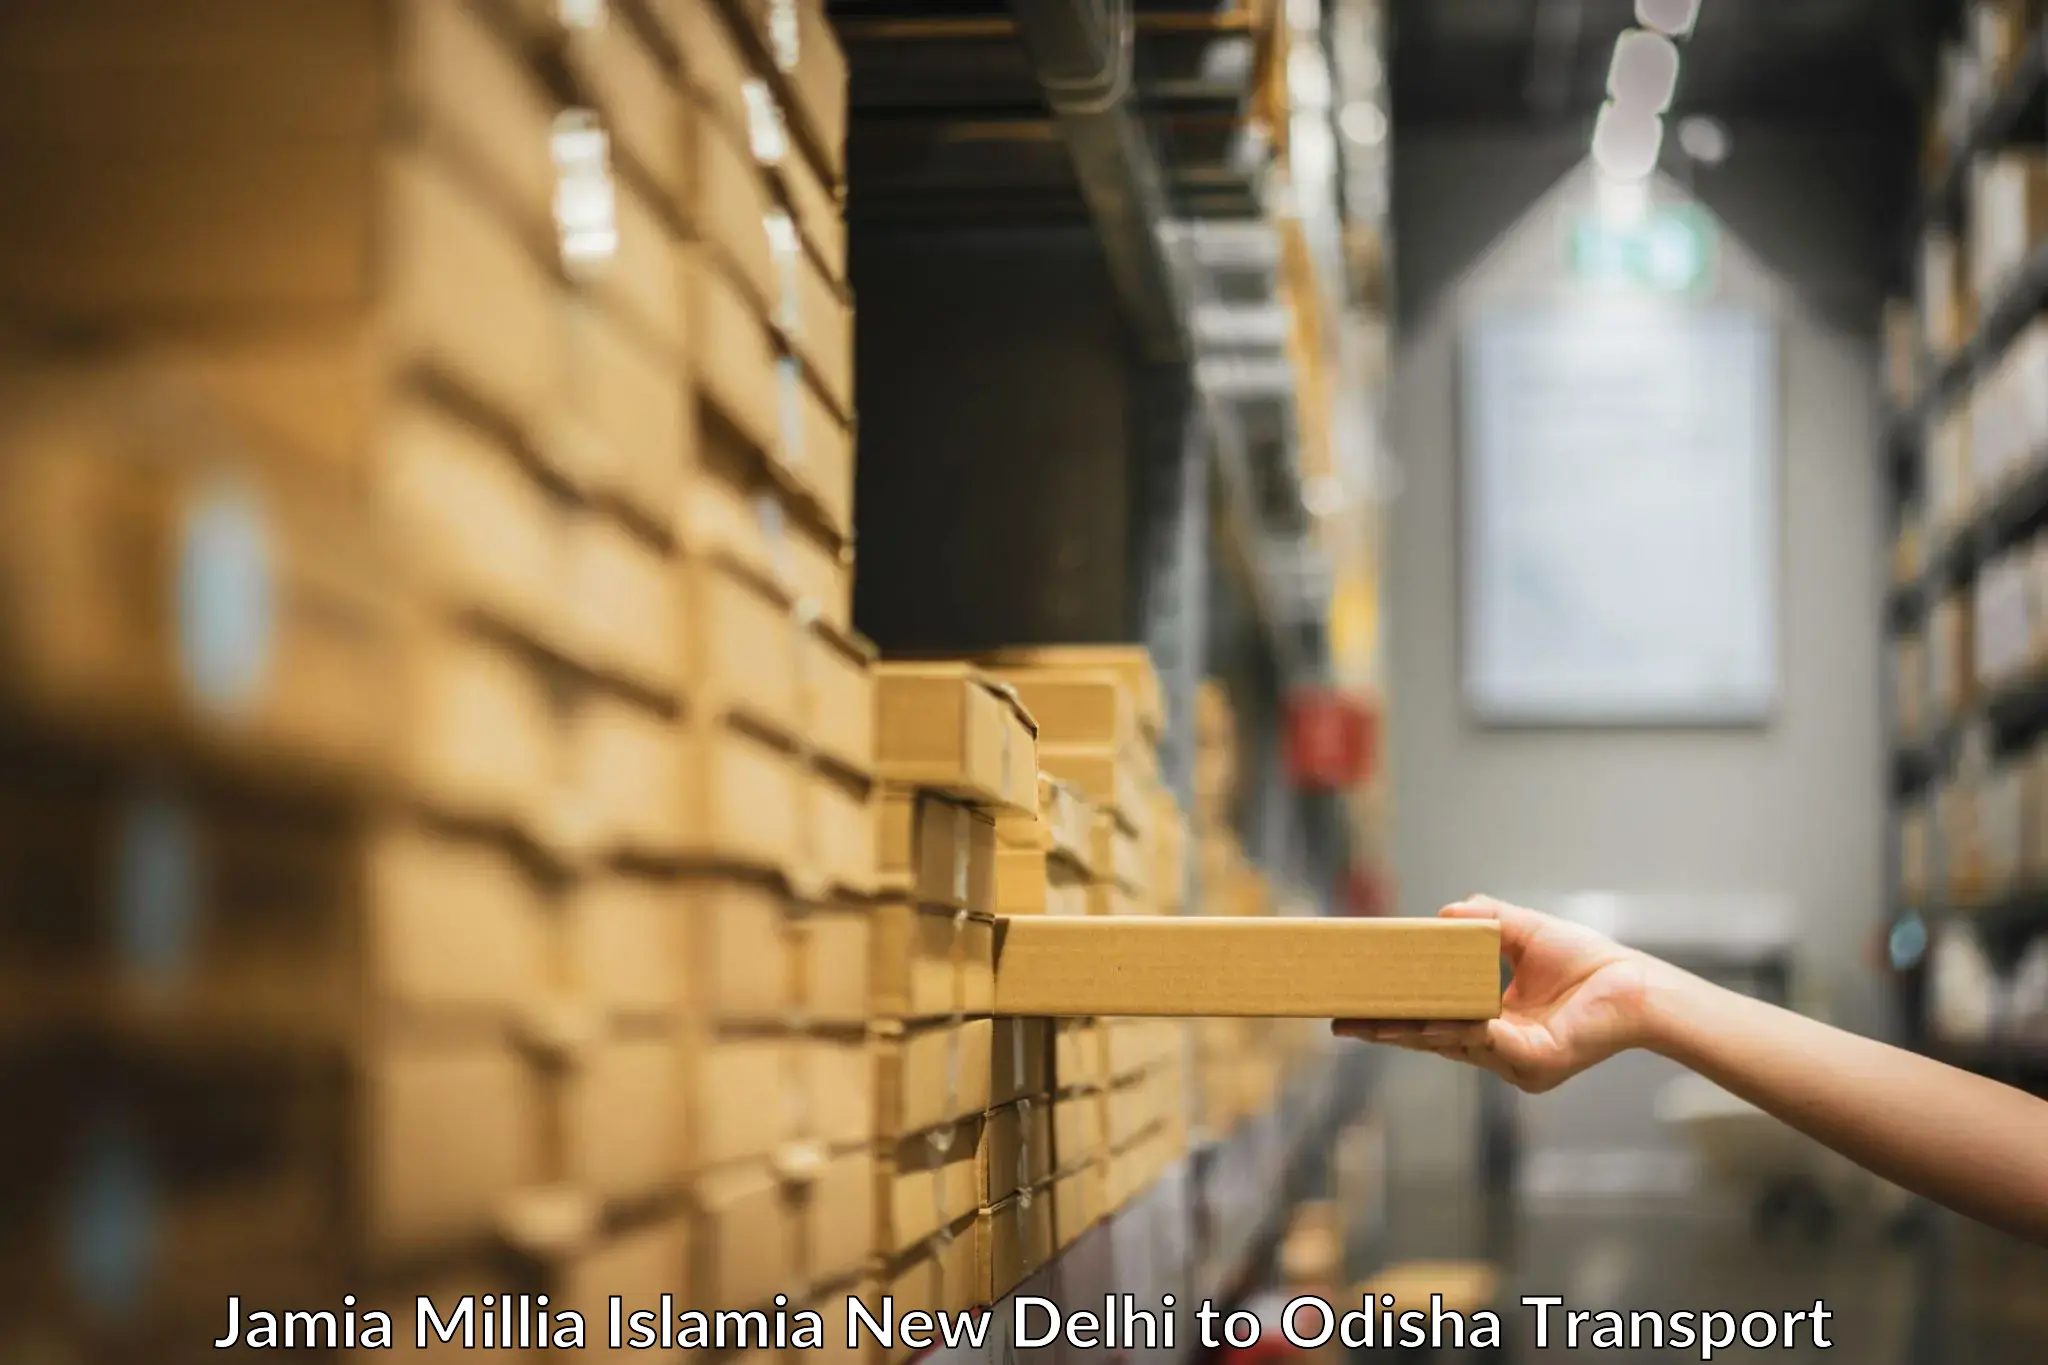 Express transport services Jamia Millia Islamia New Delhi to Jaipatna